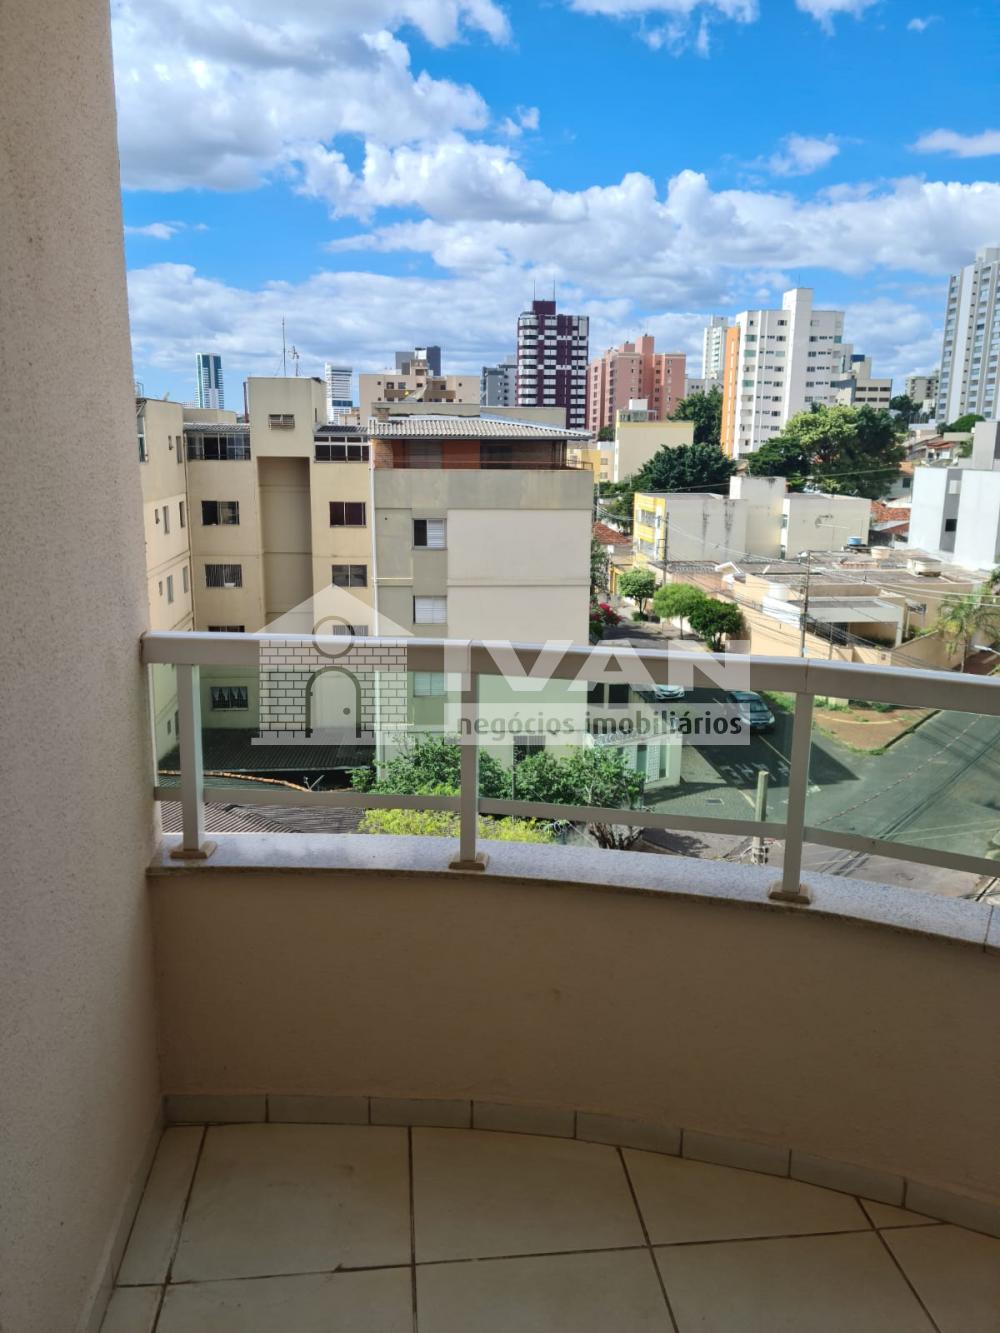 Comprar Apartamento / Padrão em Uberlandia R$ 330.000,00 - Foto 22